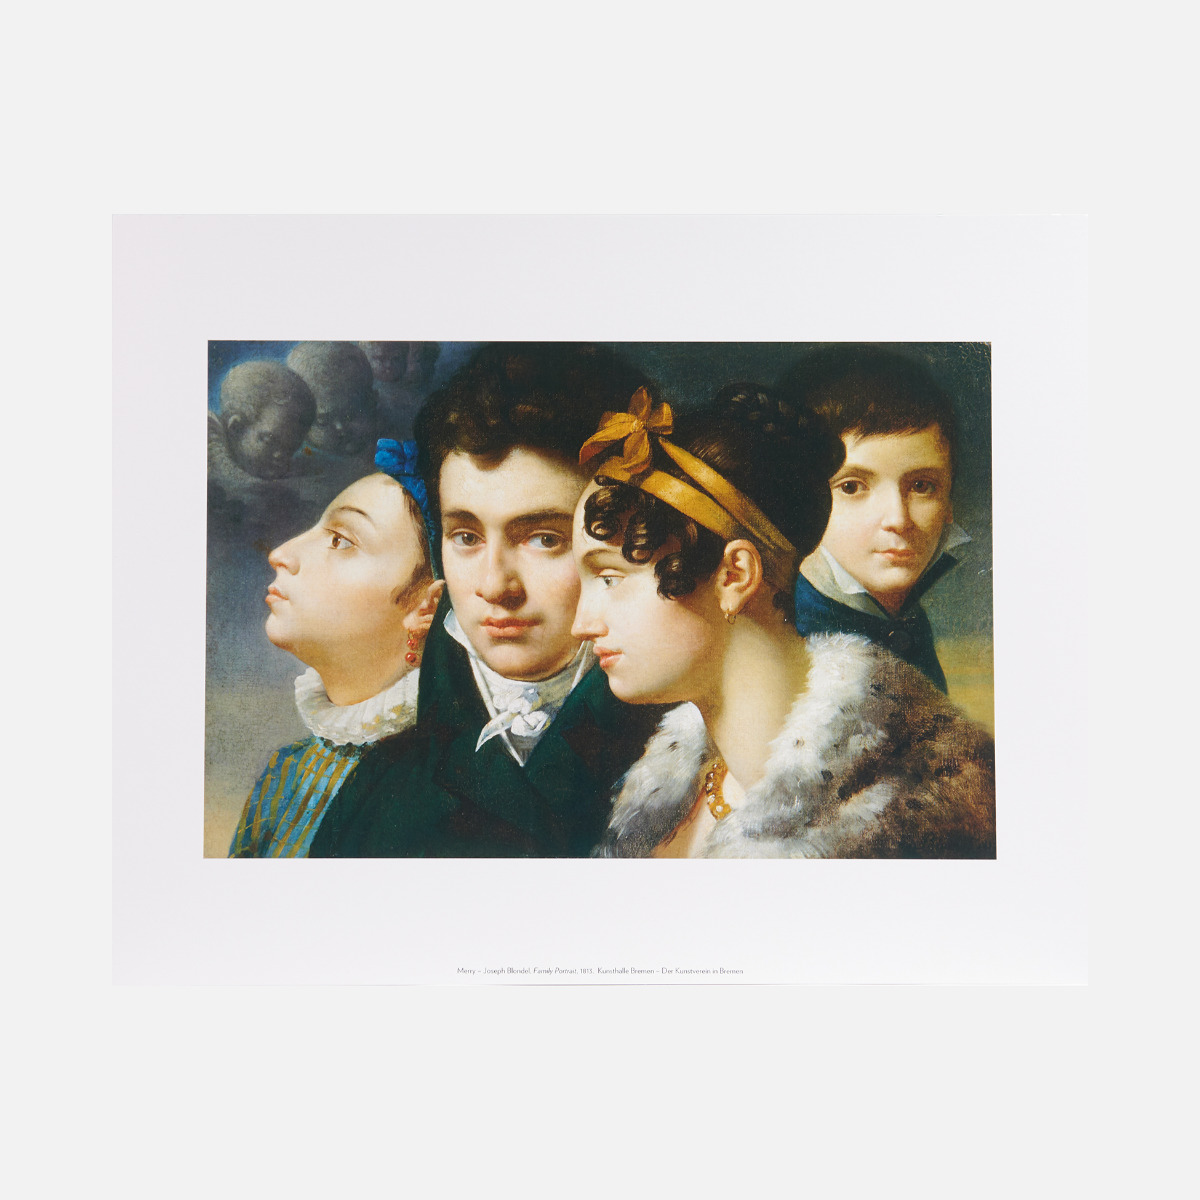 Lámina Retrato de familia, 1813